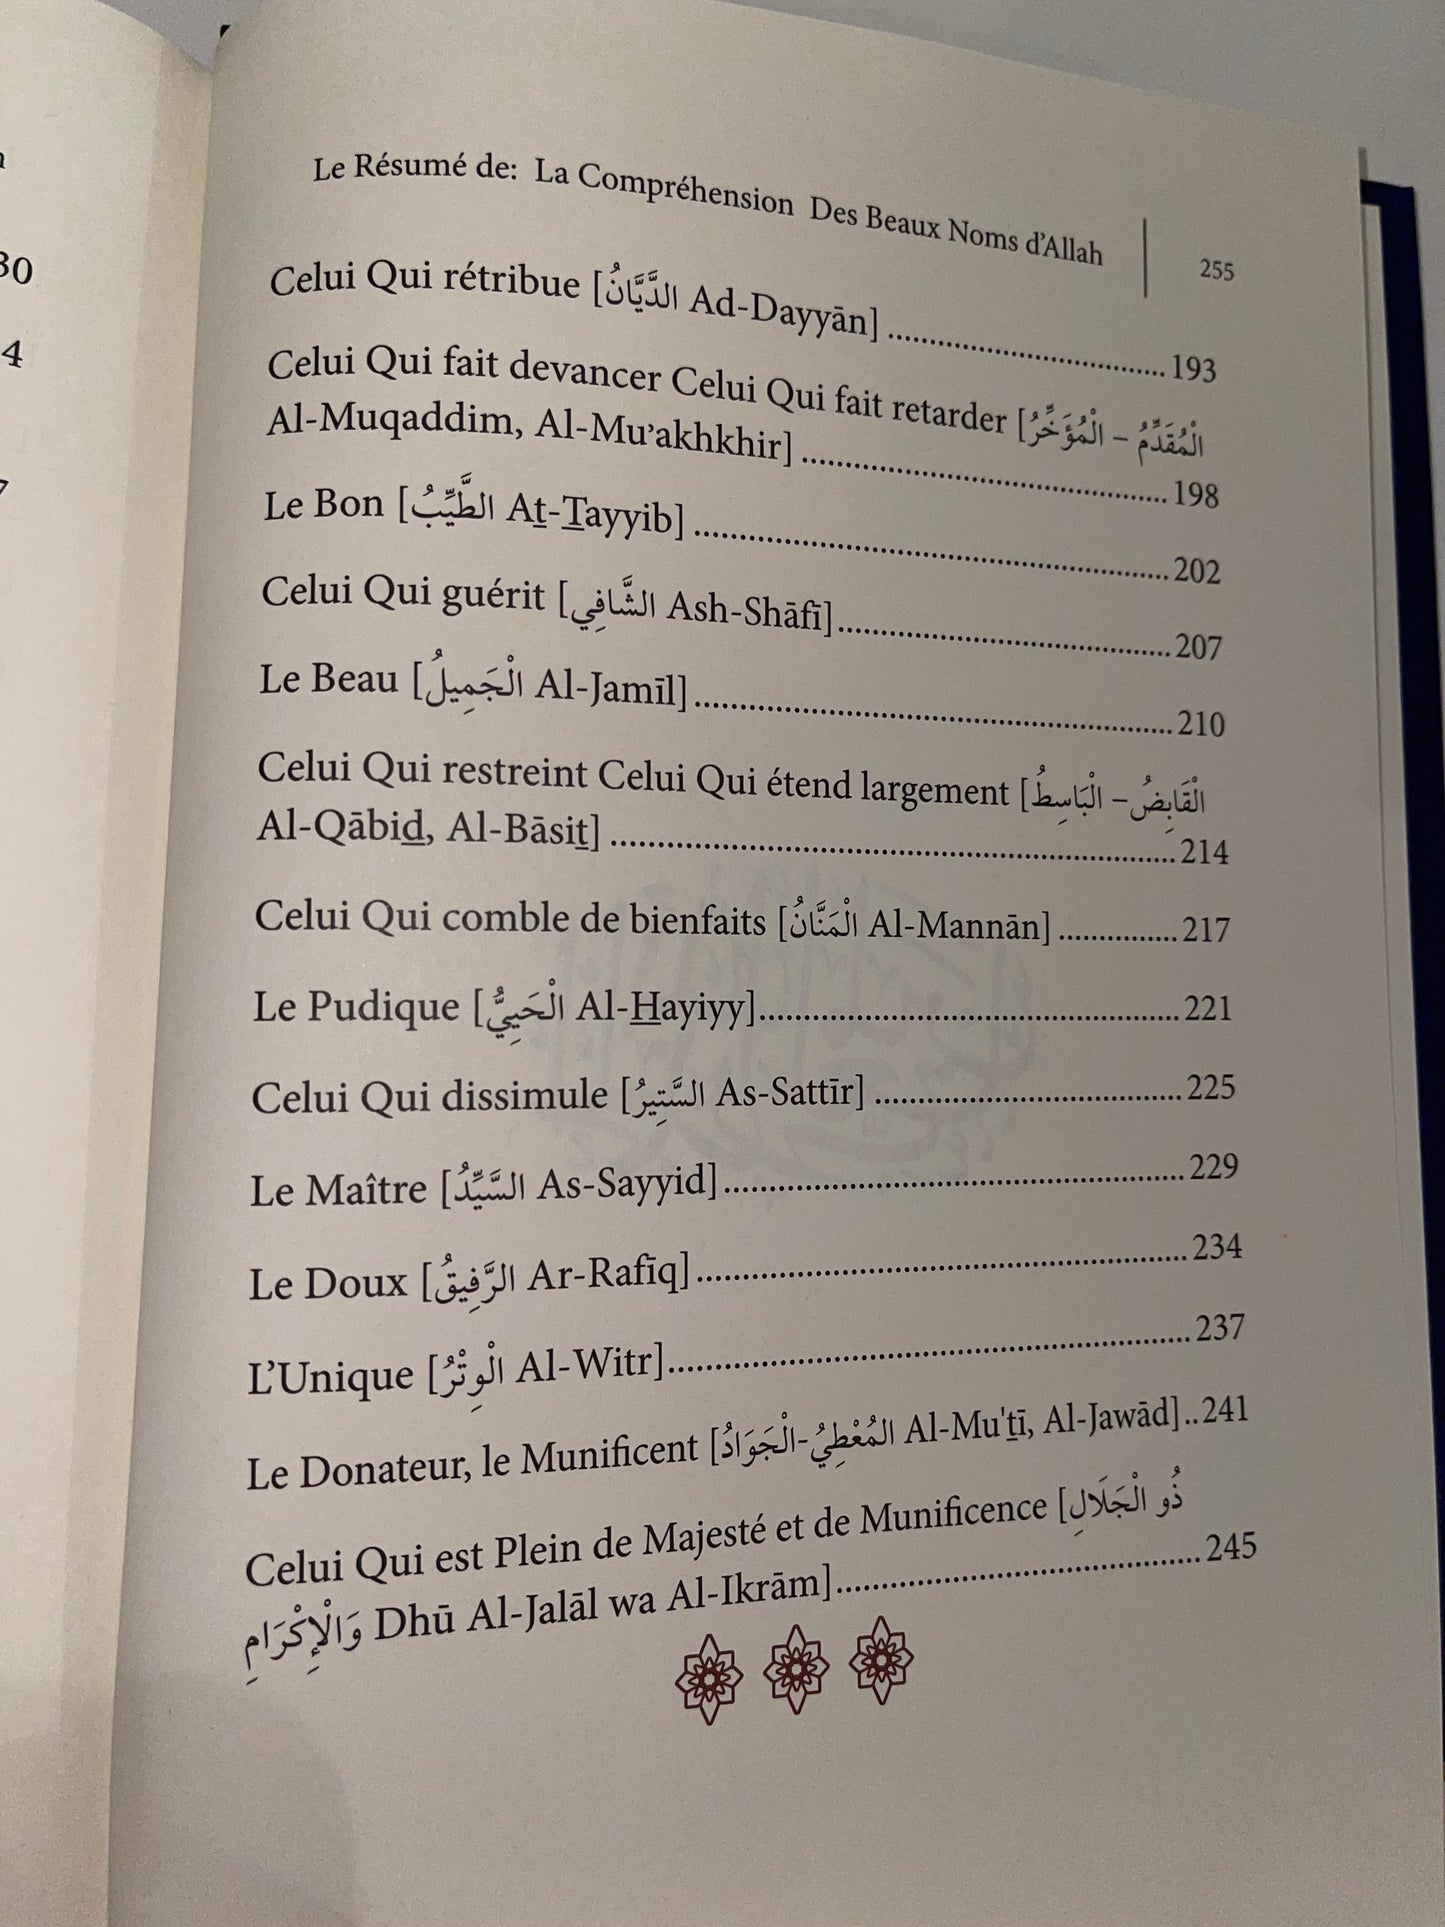 Le Résumé de la Compréhension des Beaux Noms d’Allah